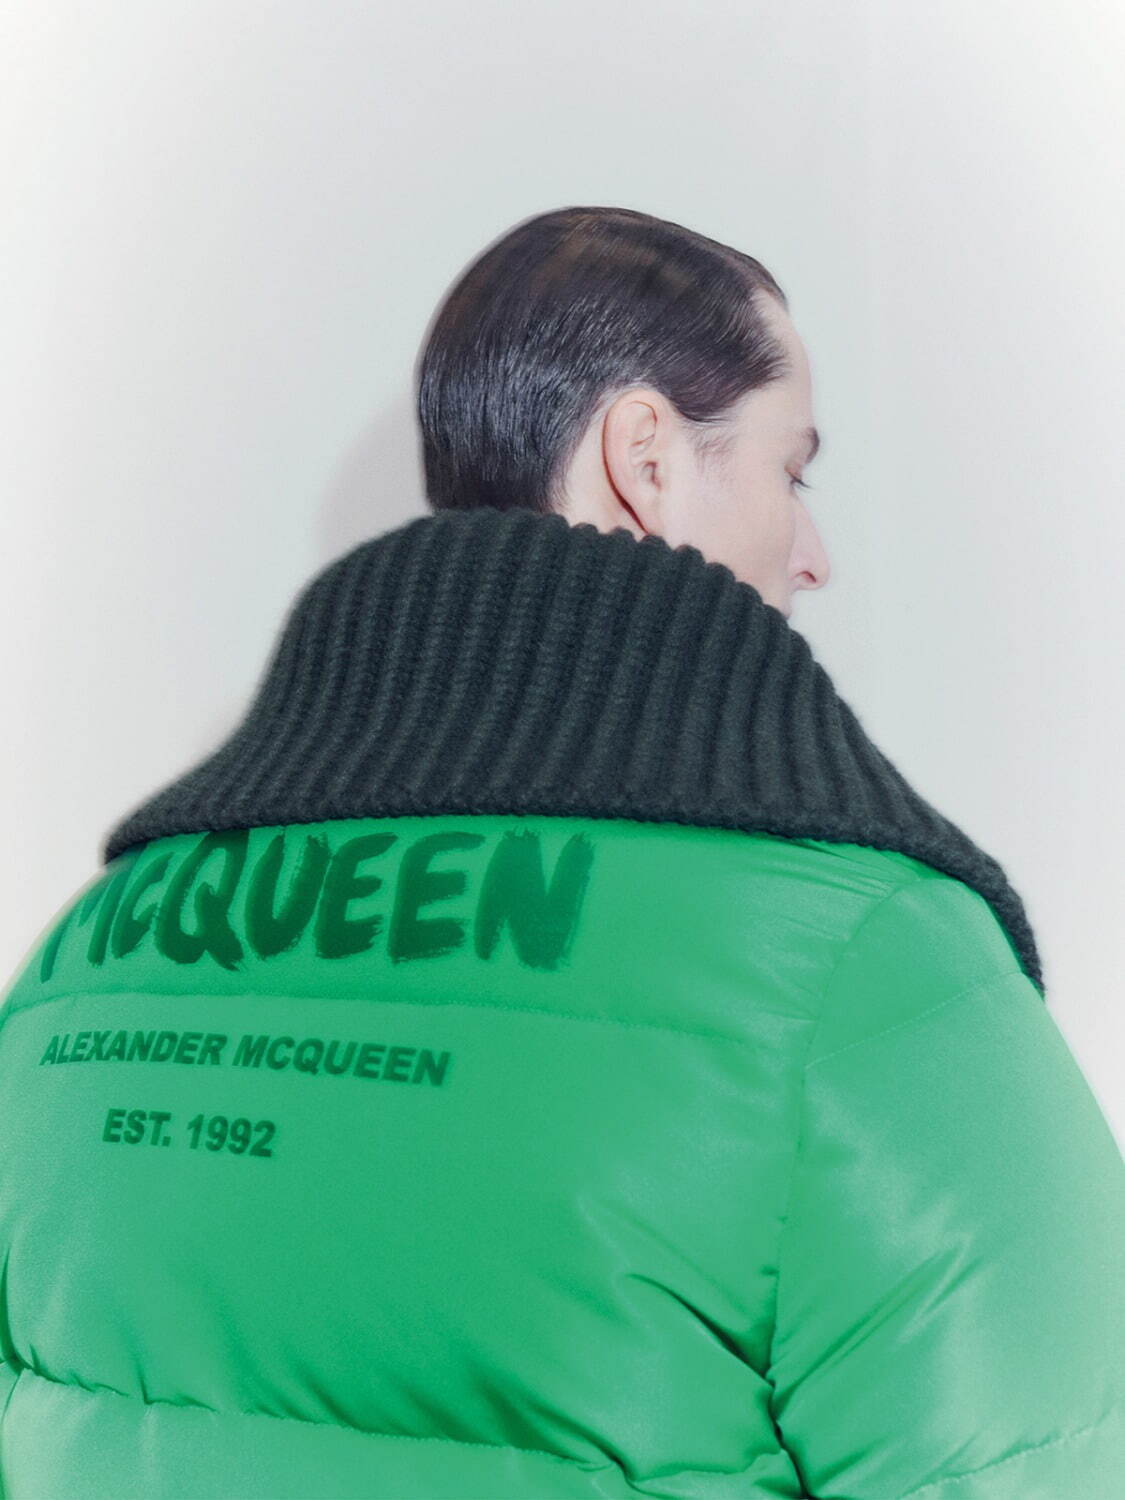 アレキサンダー・マックイーン(Alexander McQueen) 2021-22年秋冬メンズコレクション  - 写真13